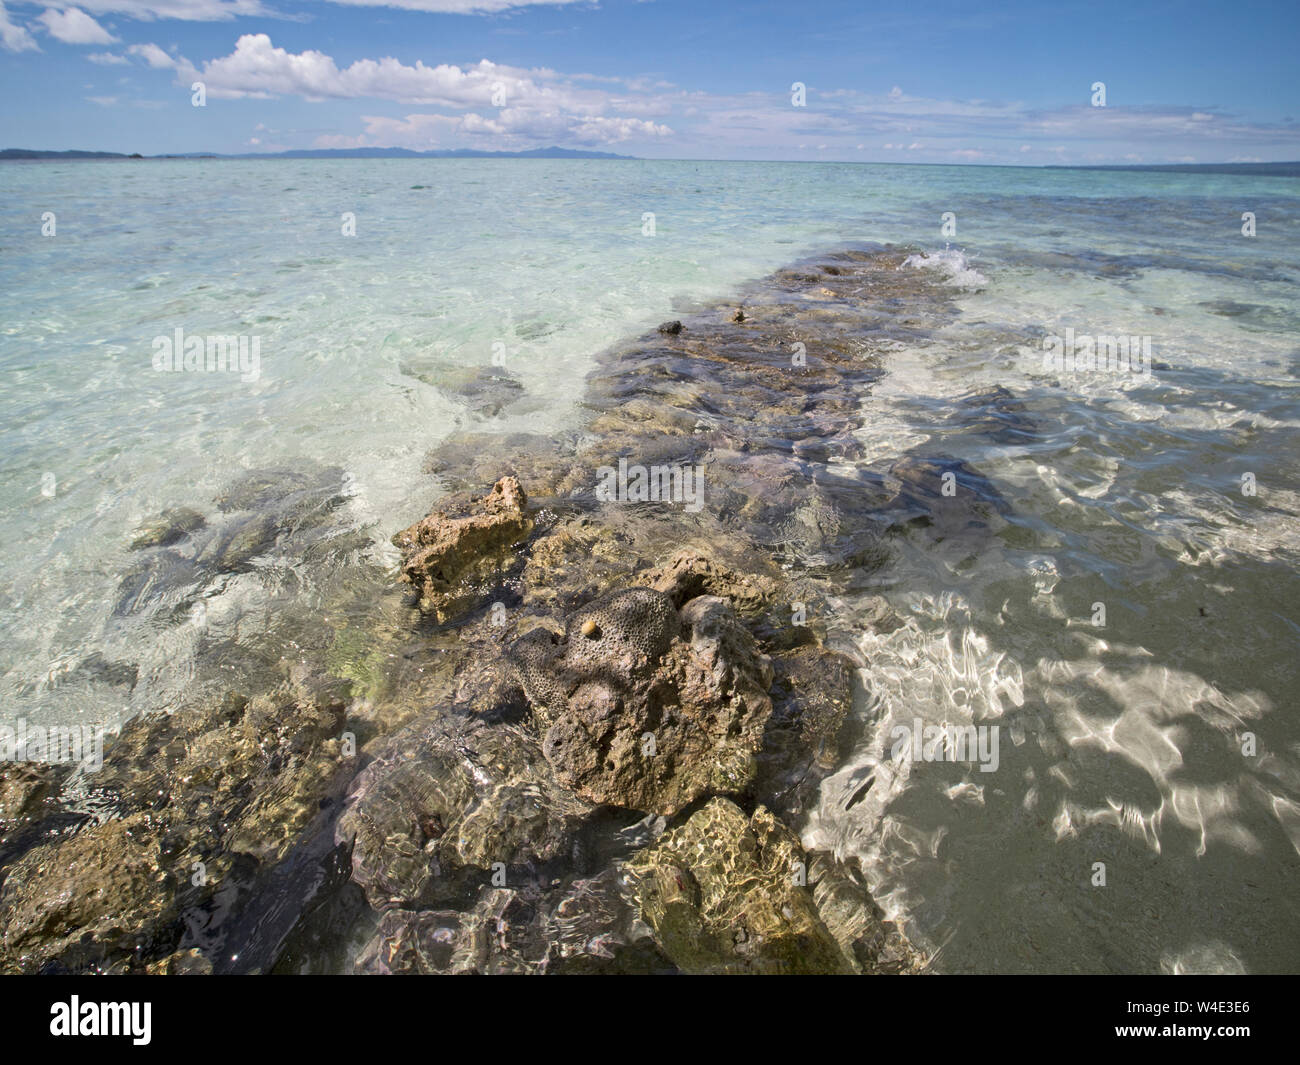 Levée des récifs coralliens par l'activité sismique de l'île précédent Kennedy, nouveau groupe de Géorgie, Îles Salomon Pacifique Sud Banque D'Images